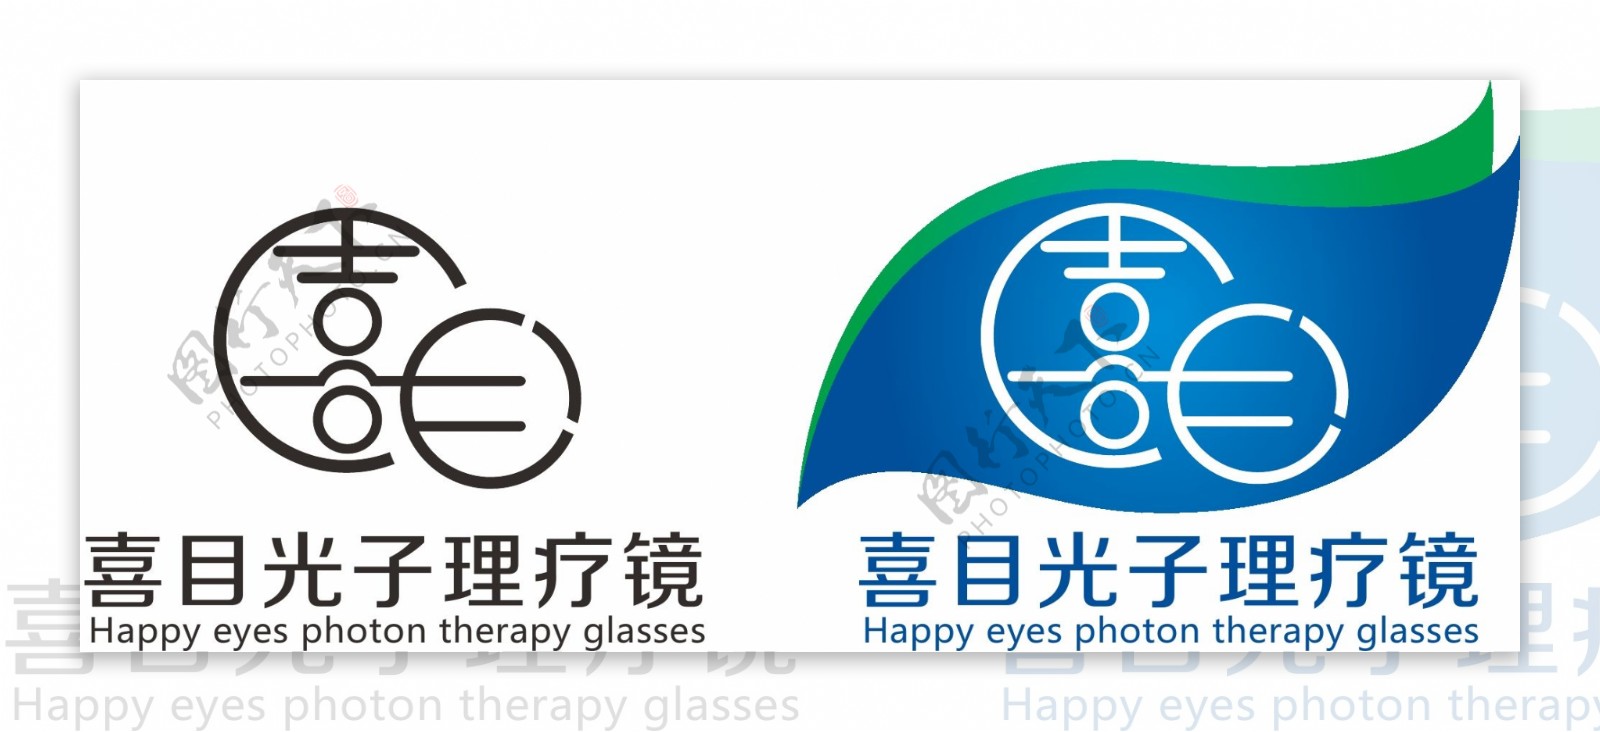 喜目光子理疗镜logo图片